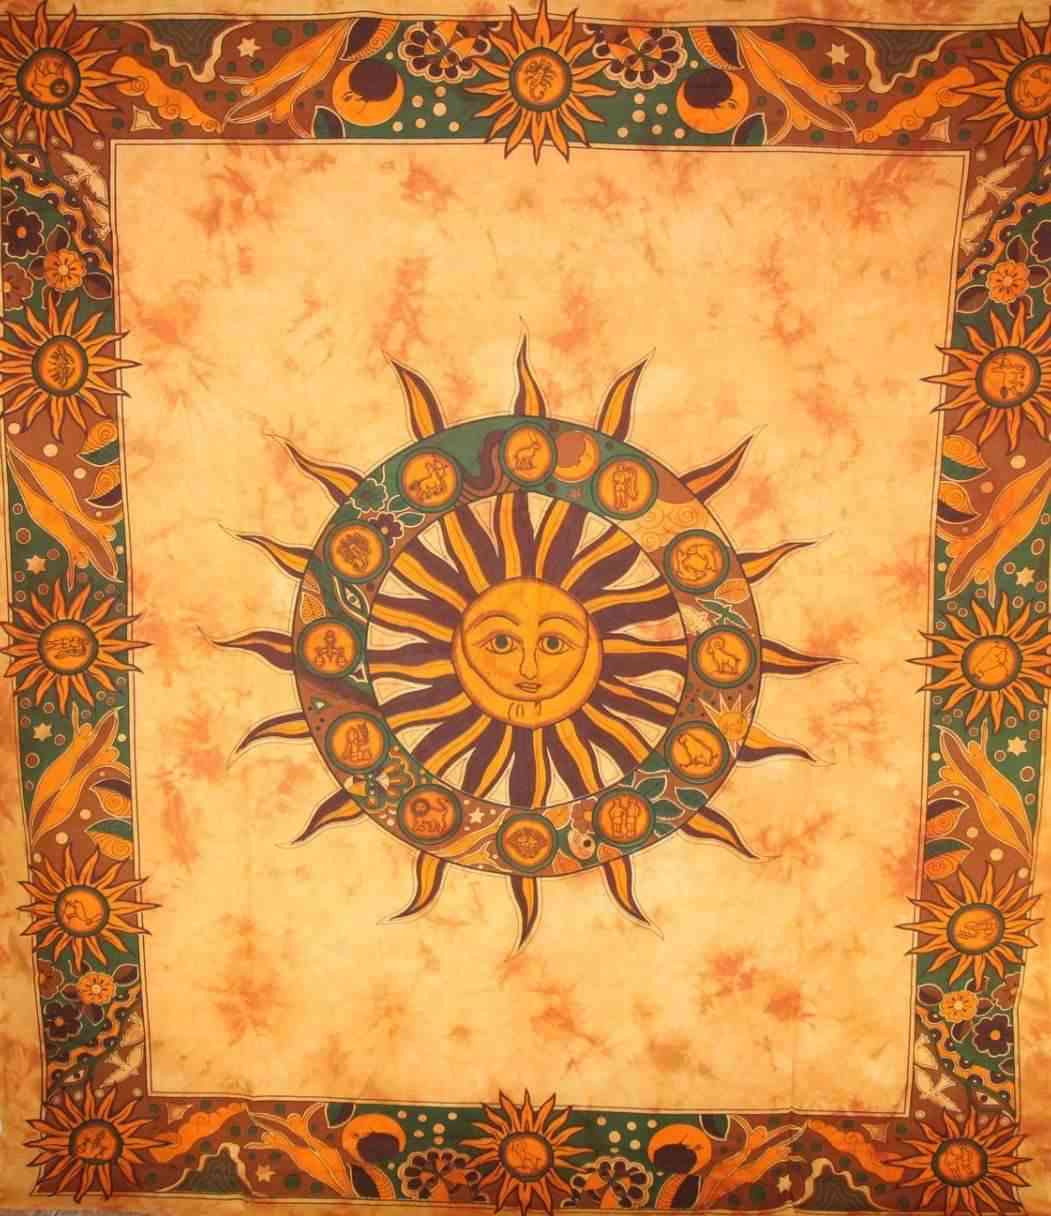 Sunčana čakra s dvanaest znakova tapiserija